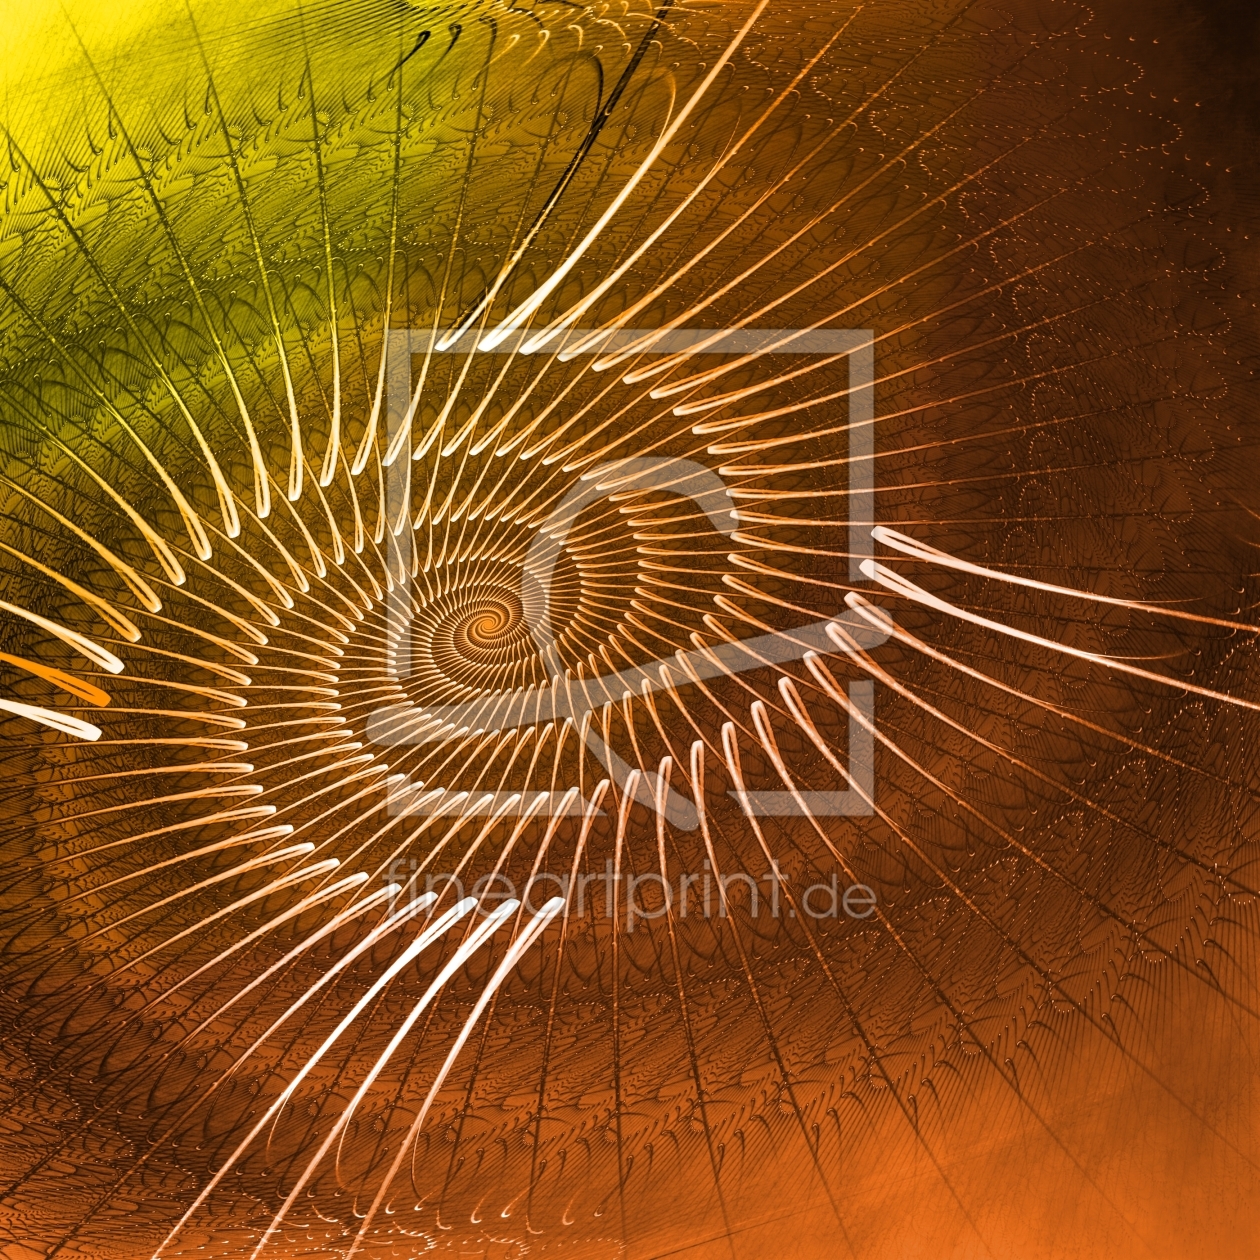 Bild-Nr.: 10634062 spiralmuster 2 erstellt von PaulaPanther